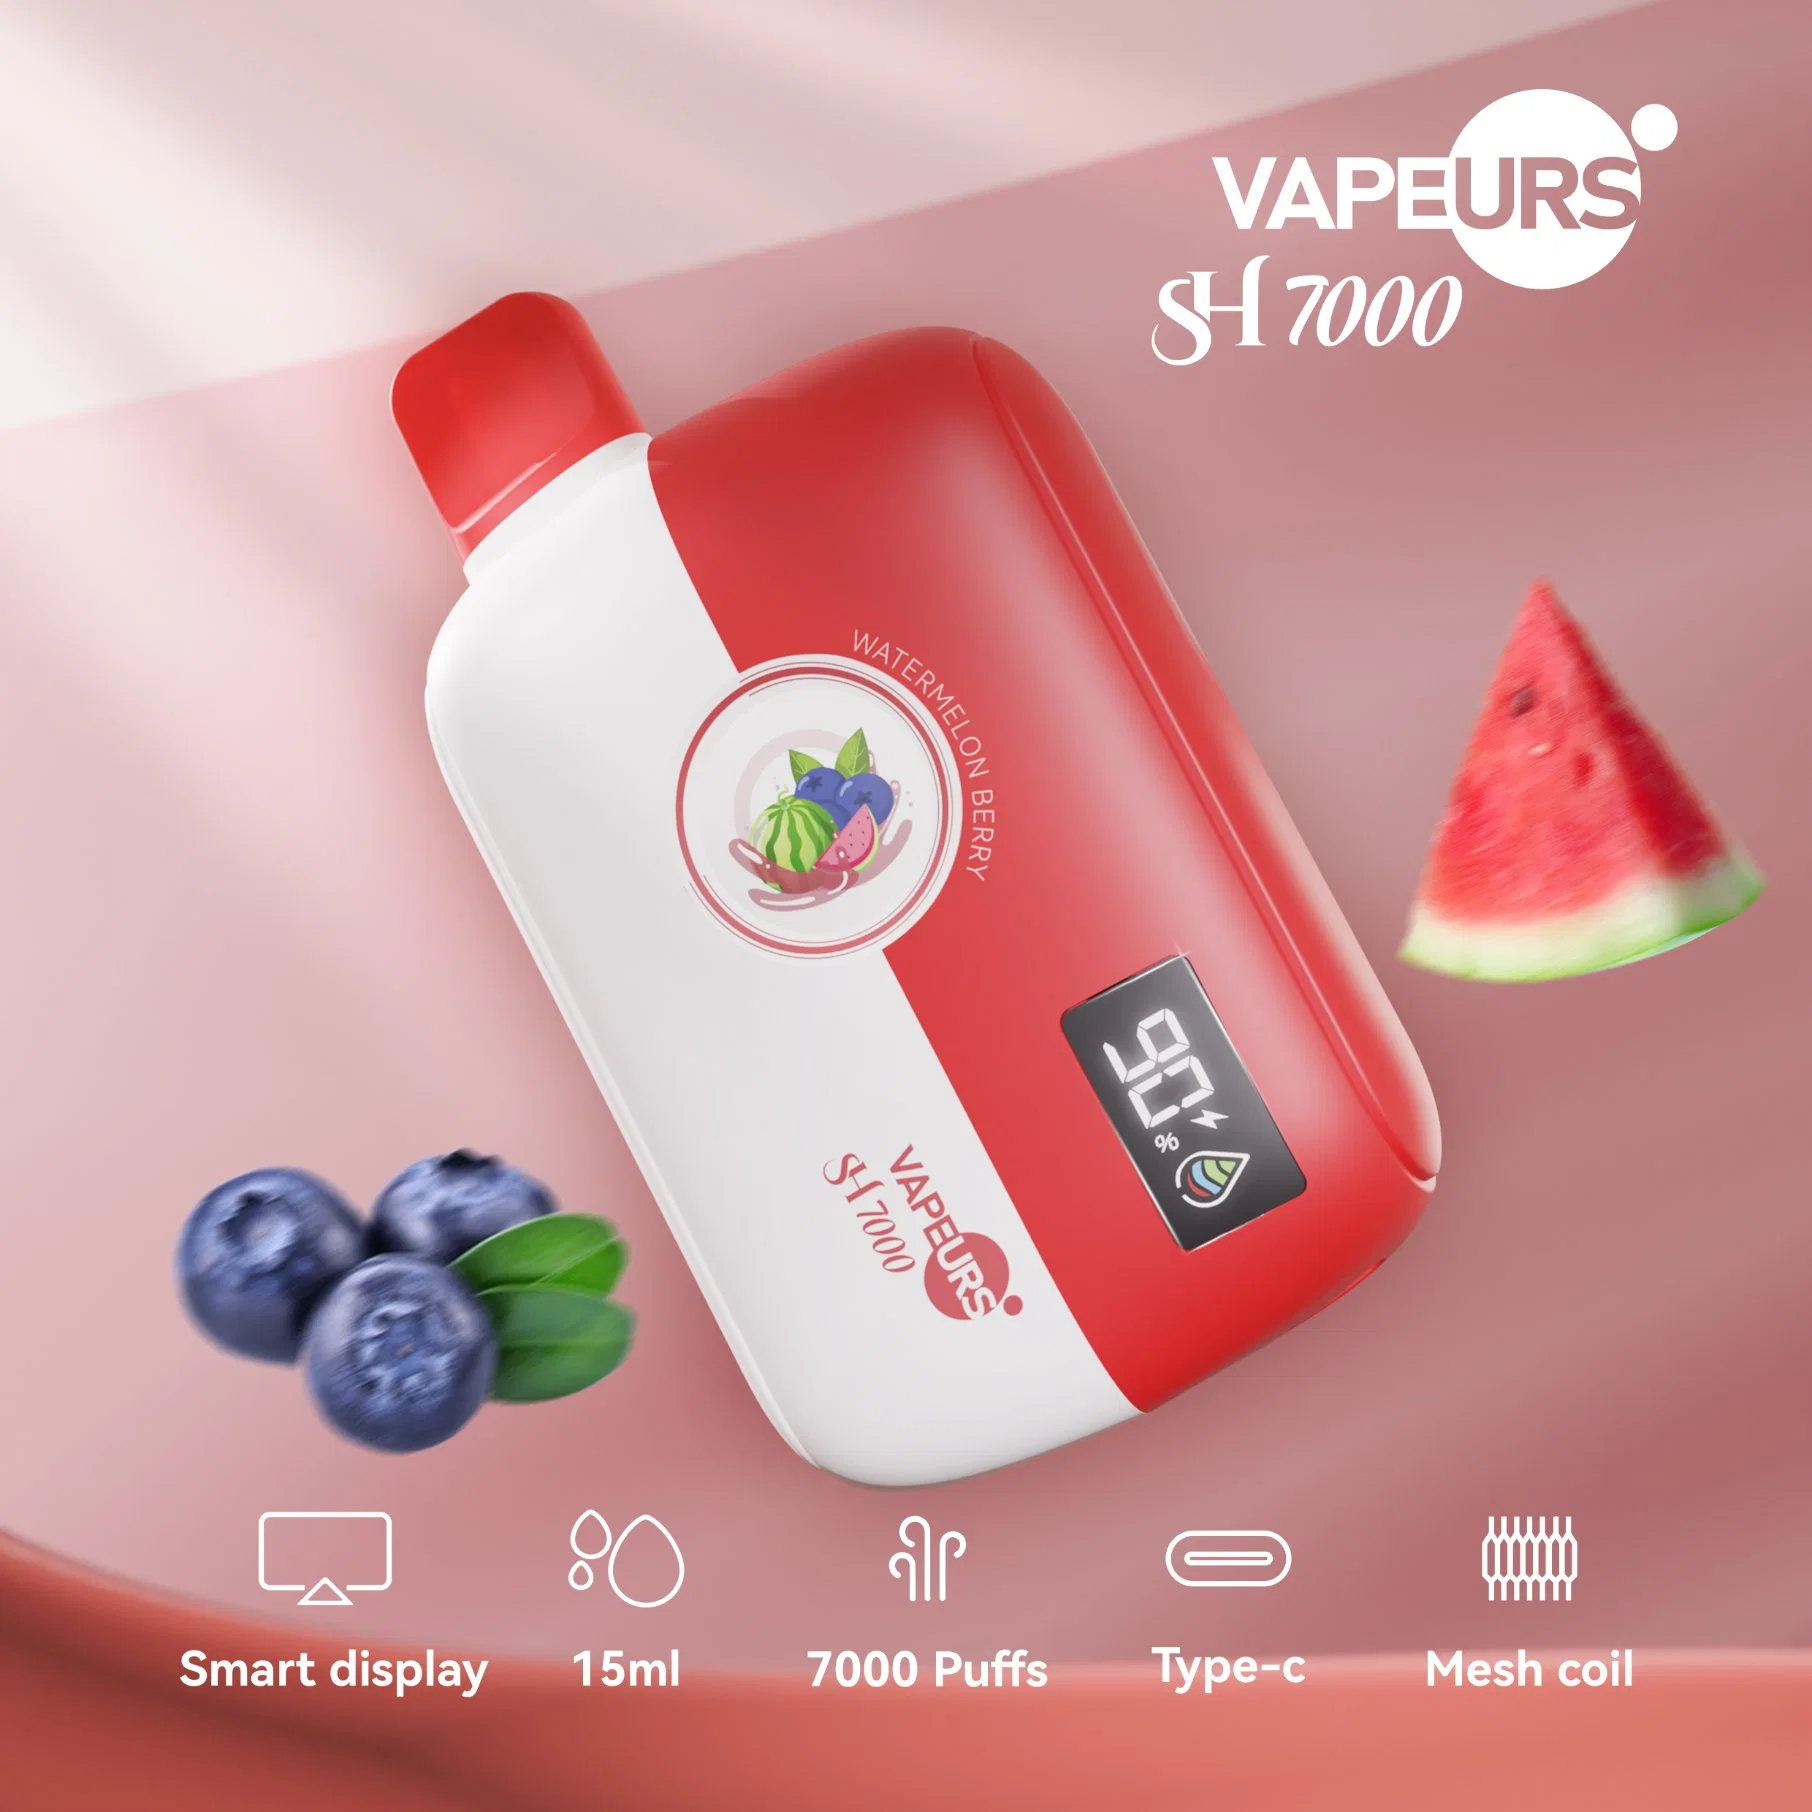 Vapeurs Sh7000 Newest Vape 7000 Puffs Disposable Electronic Cigarette Mesh Vape Rechargeable